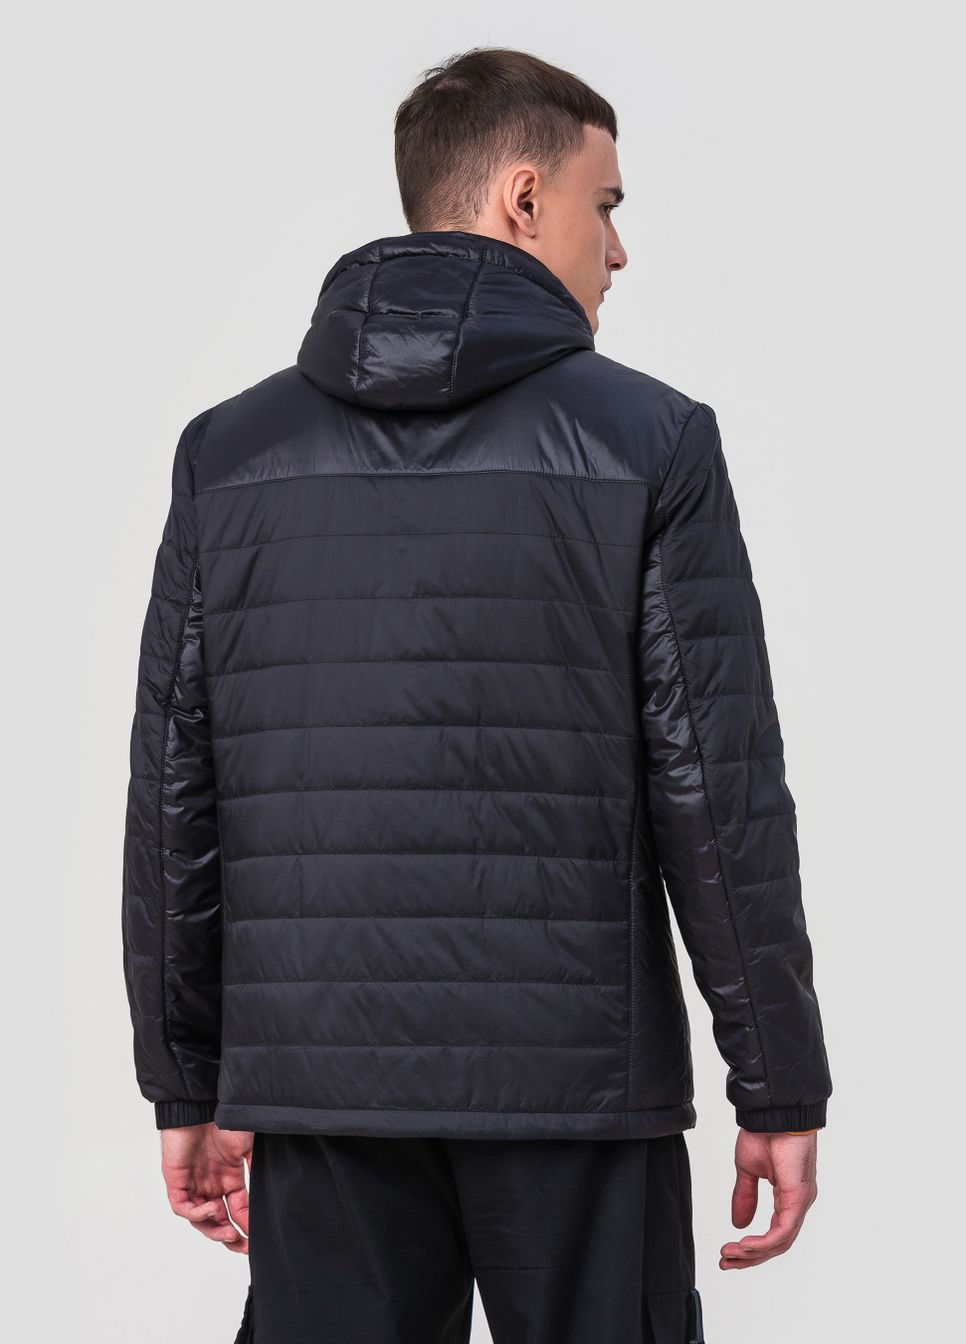 Черная демисезонная куртка мужская с капюшоном модель 098 ZPJV